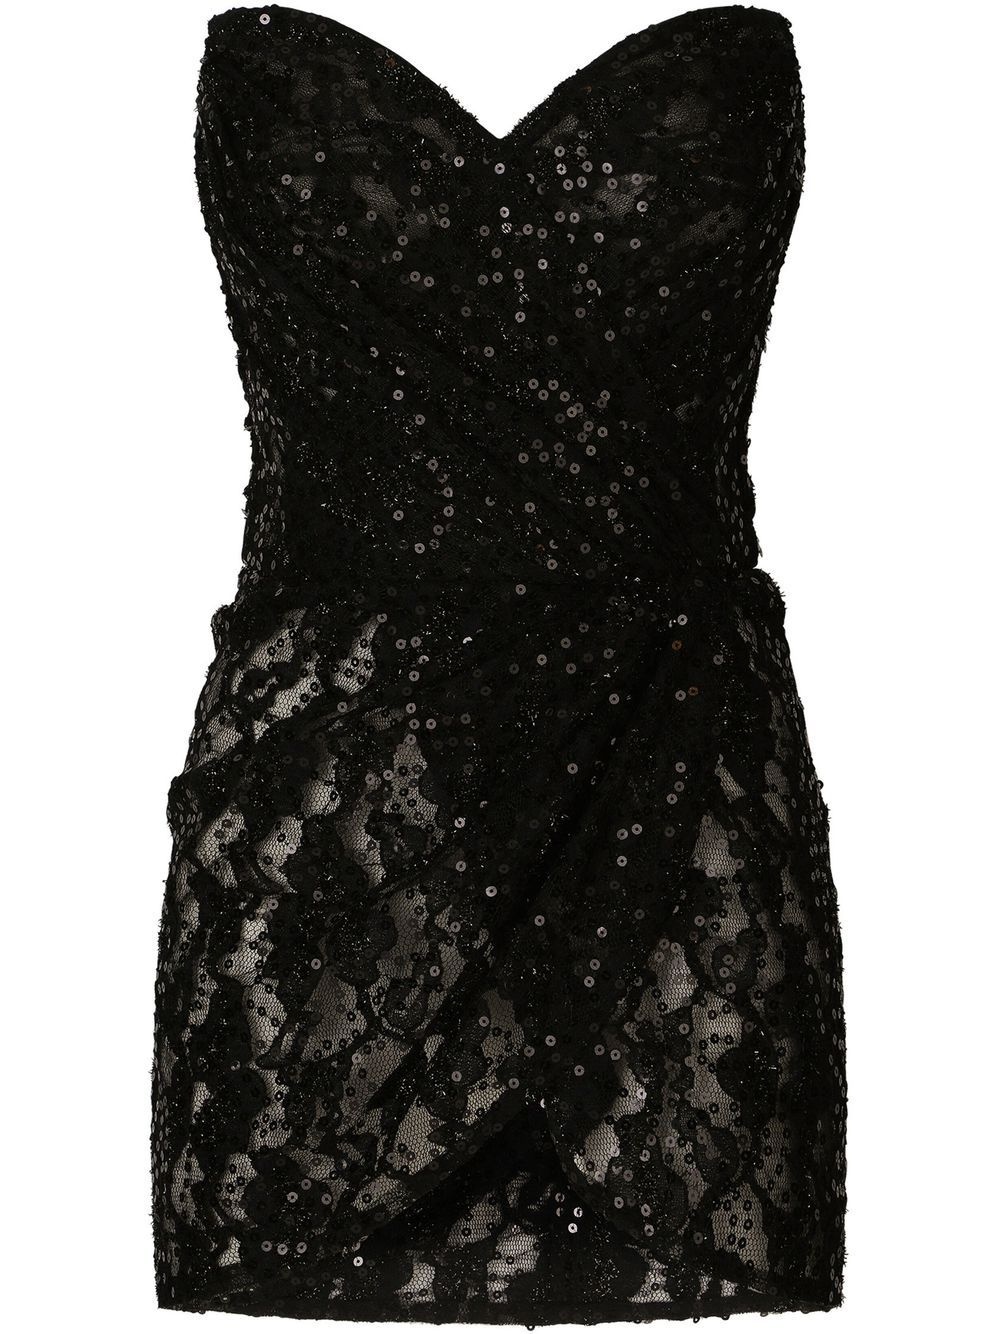 sequin-embellished strapless dress - 1